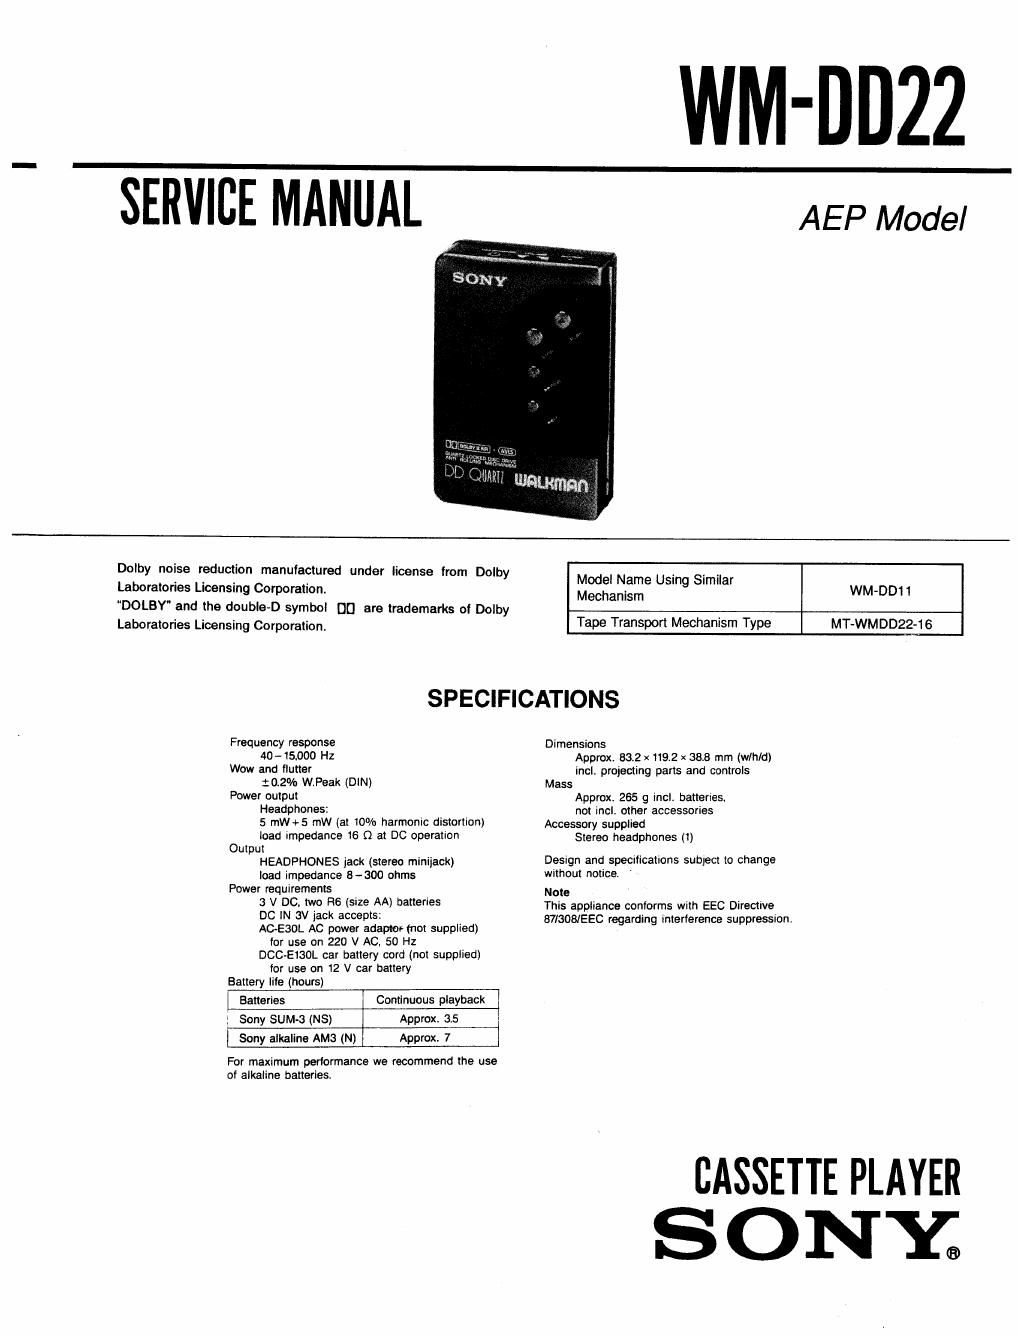 sony wm dd 22 service manual